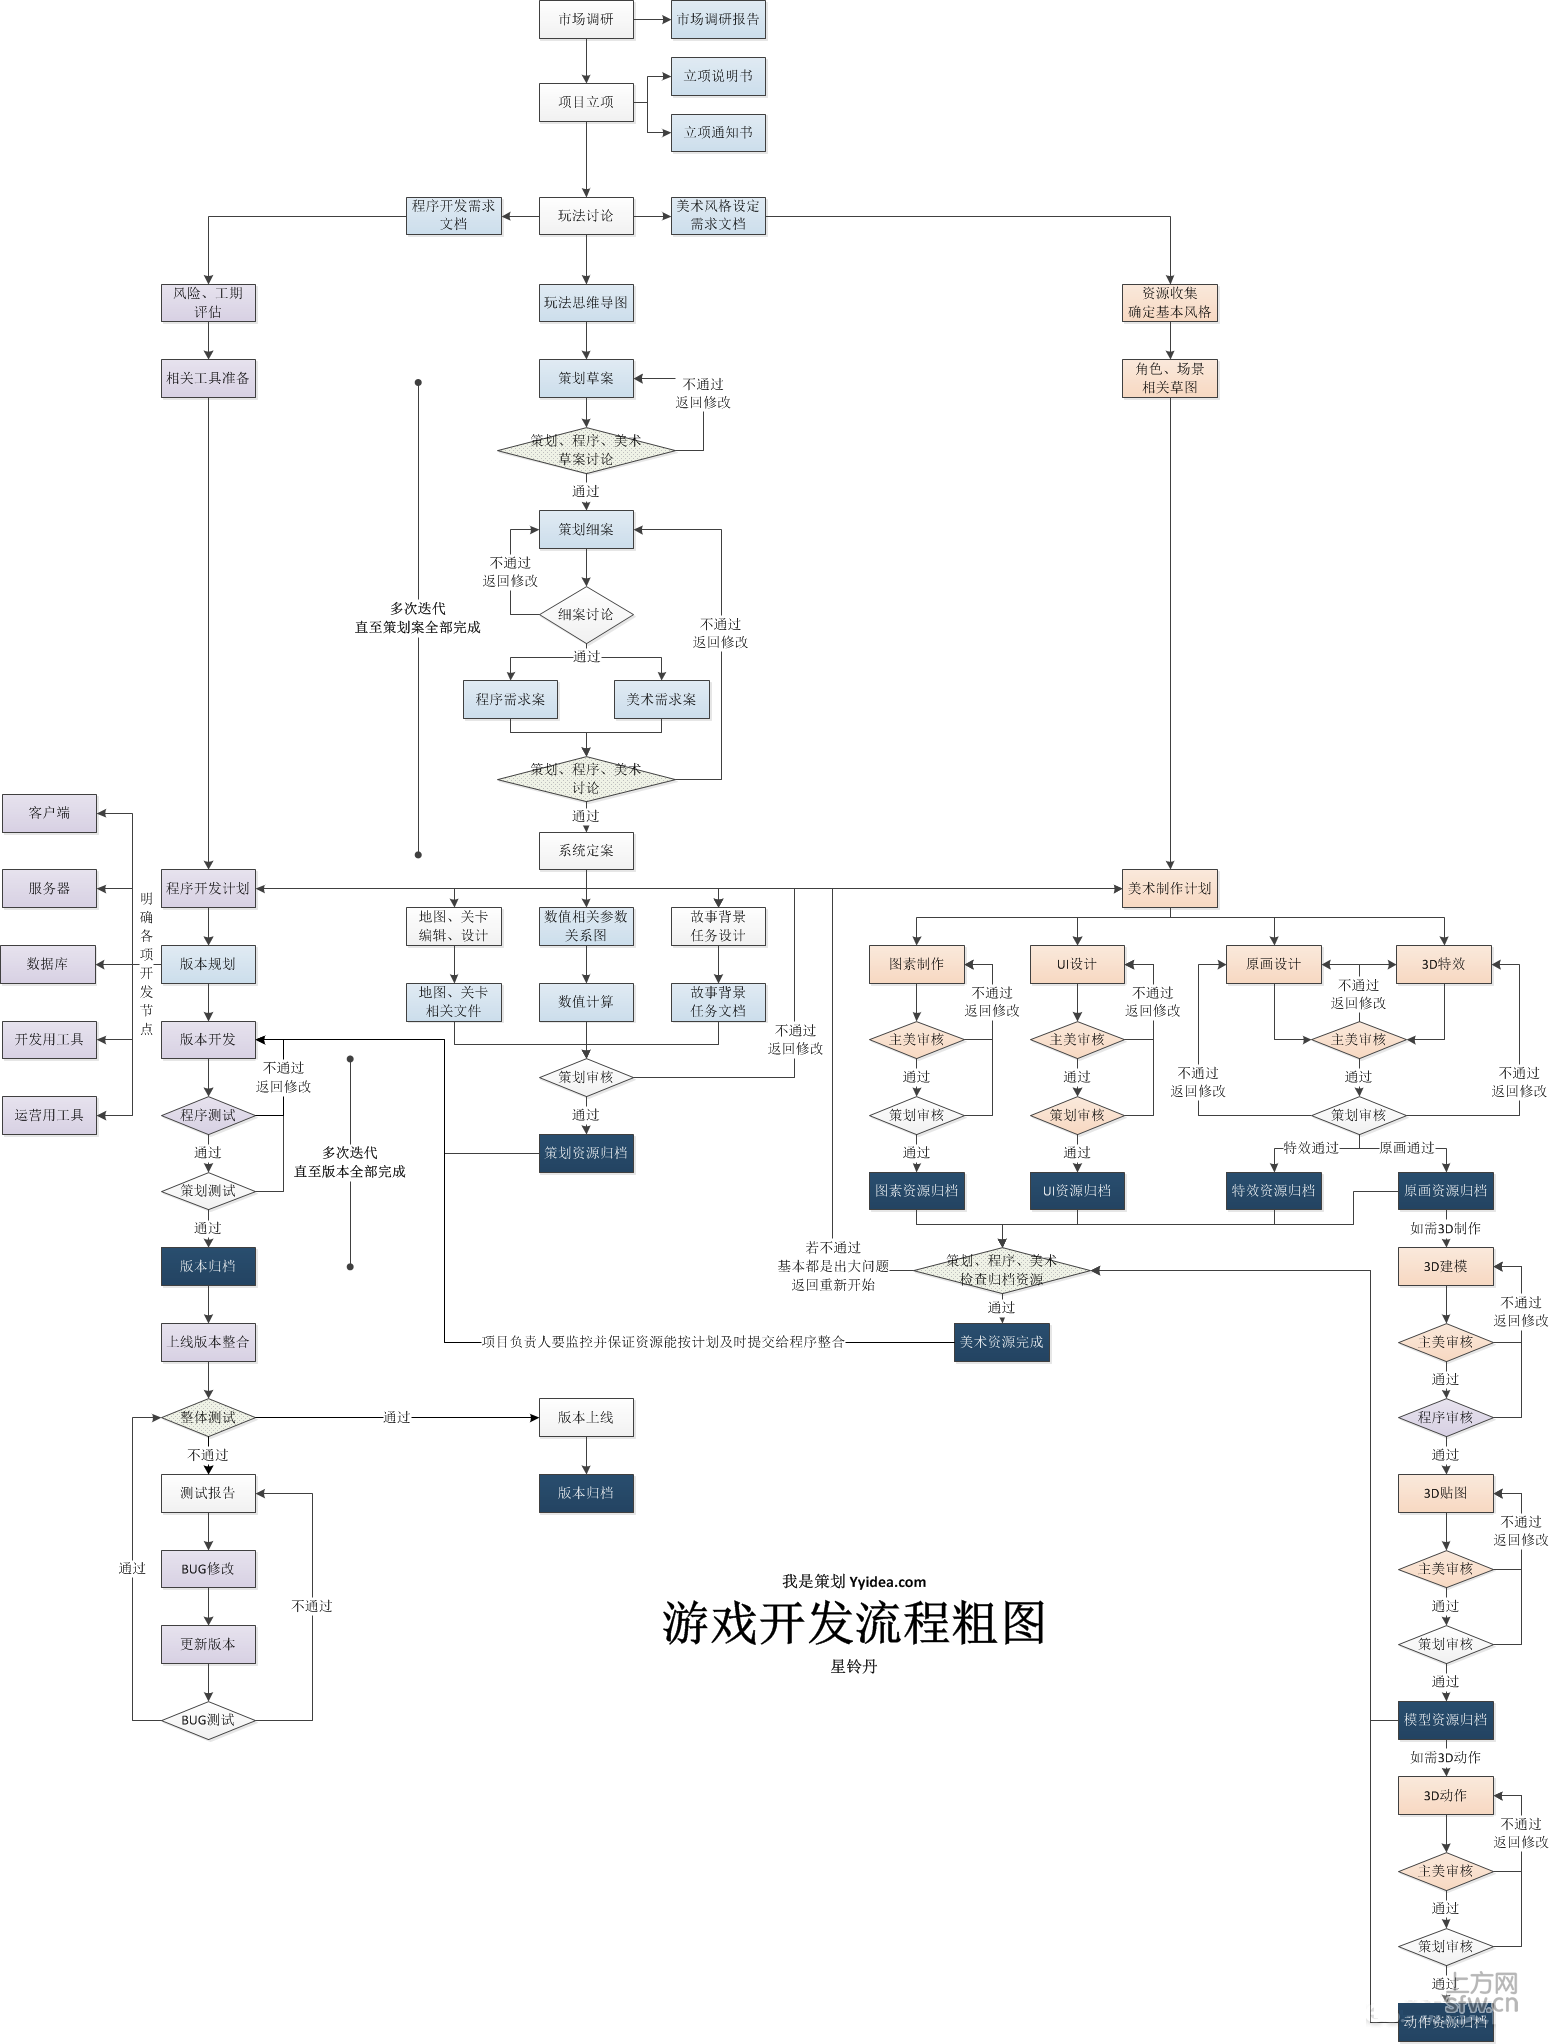 游戏开发流程-树根图